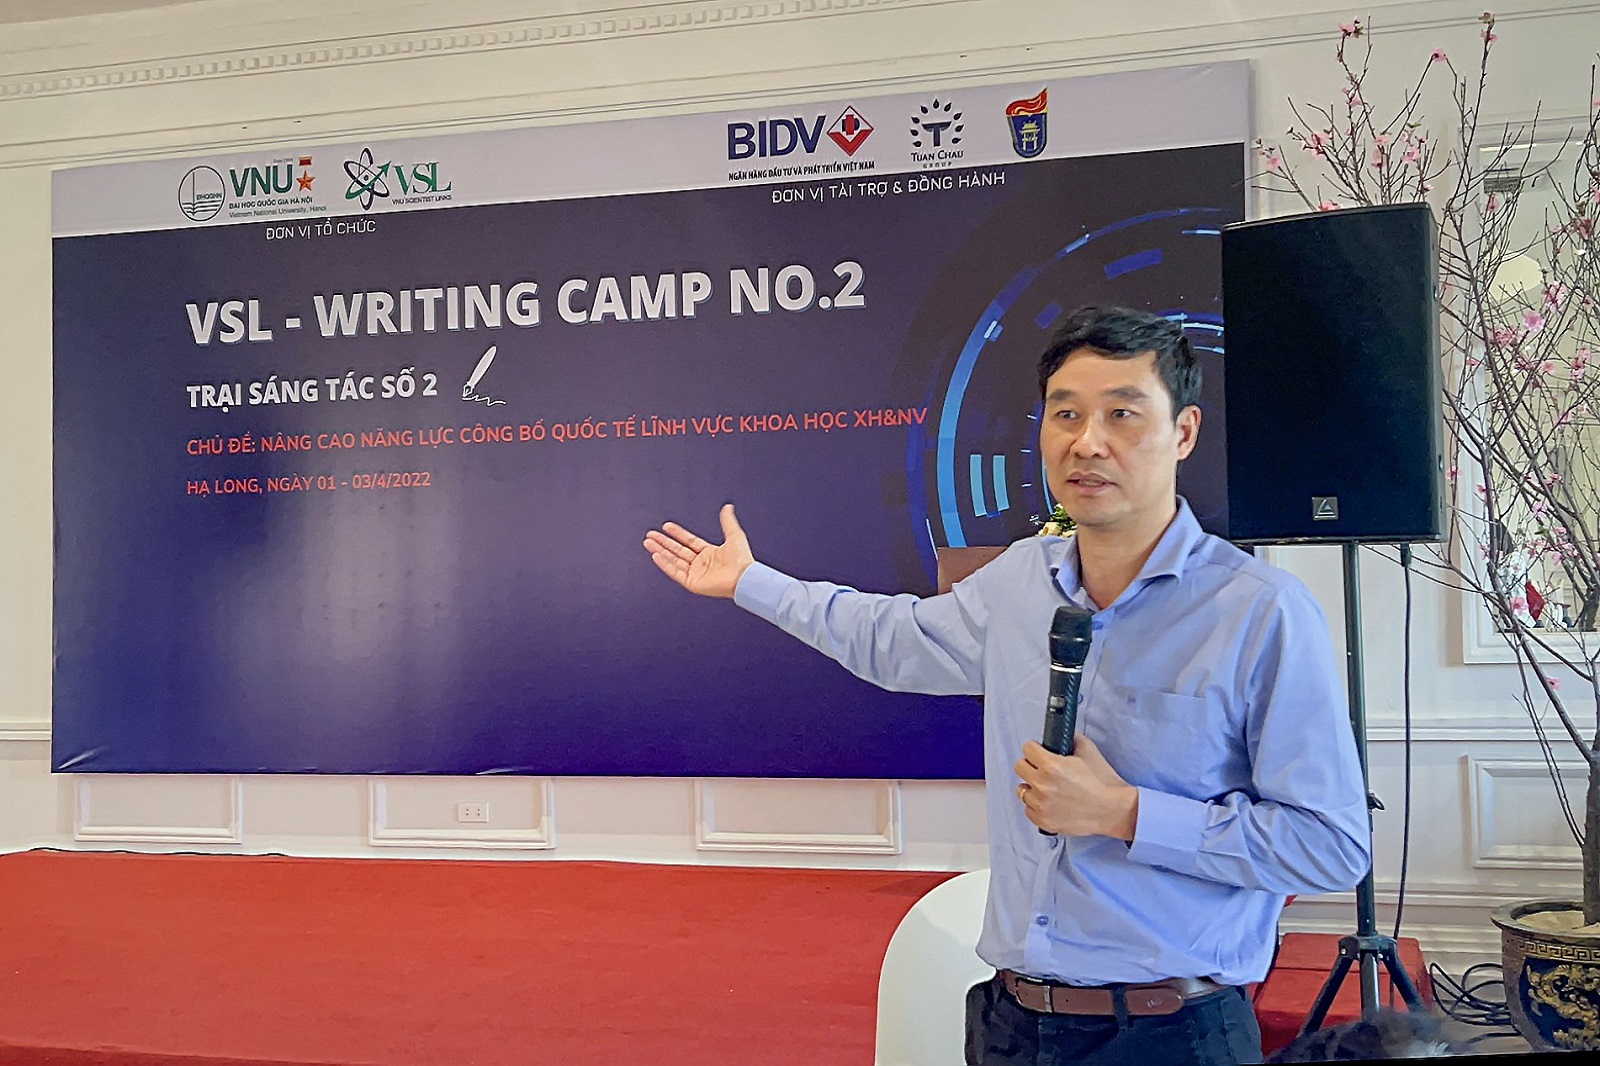 VNU-VSL Writing Camp 2 - Trại sáng tác số 2: “Nâng cao năng lực công bố quốc tế trong lĩnh vực khoa học xã hội và nhân văn”.